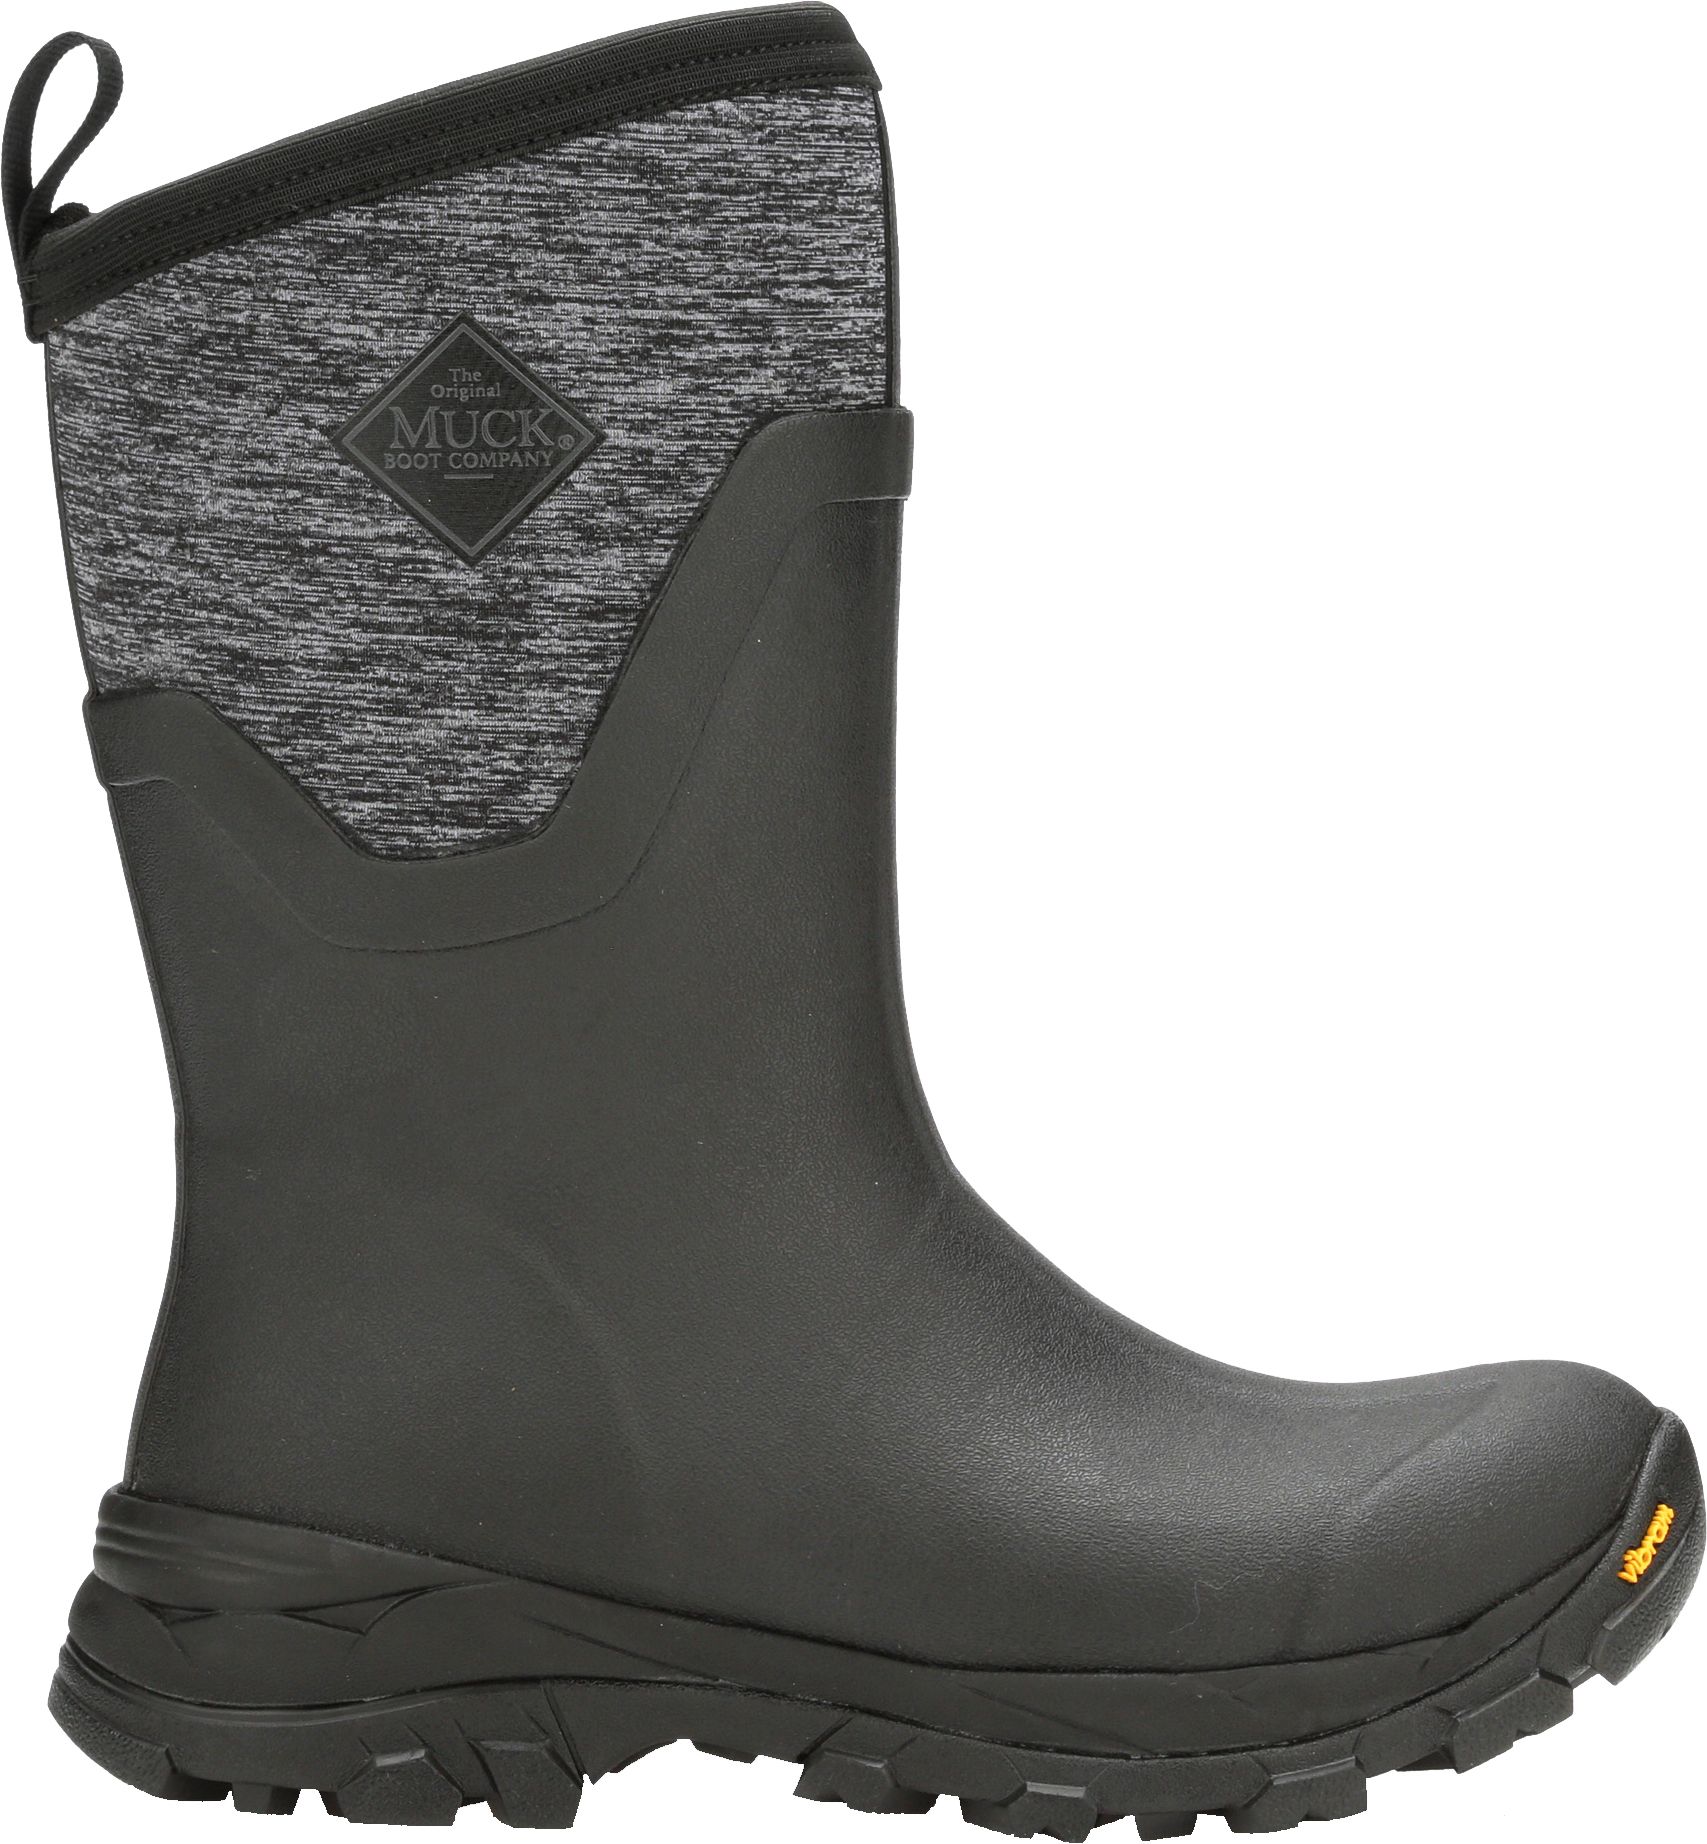 women's boots warm waterproof